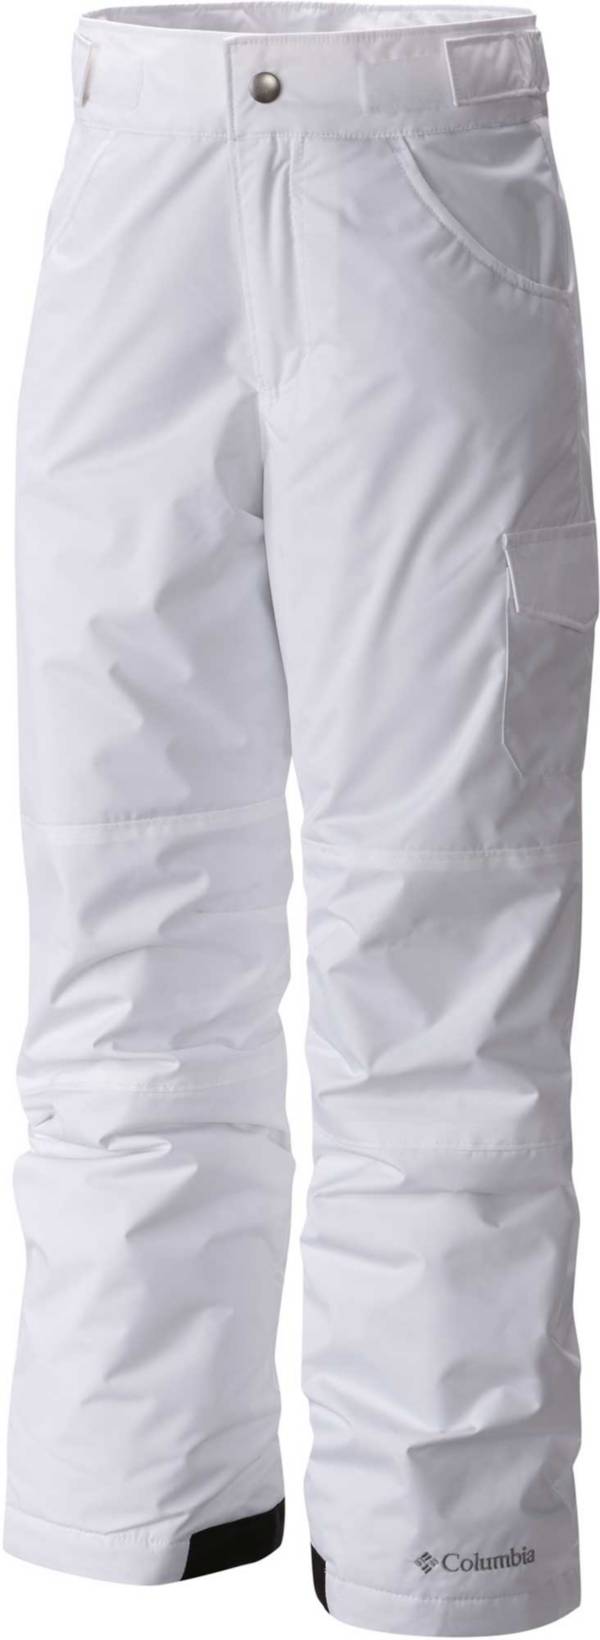 Columbia Girls' Starchaser Peak II Insulated Pants product image